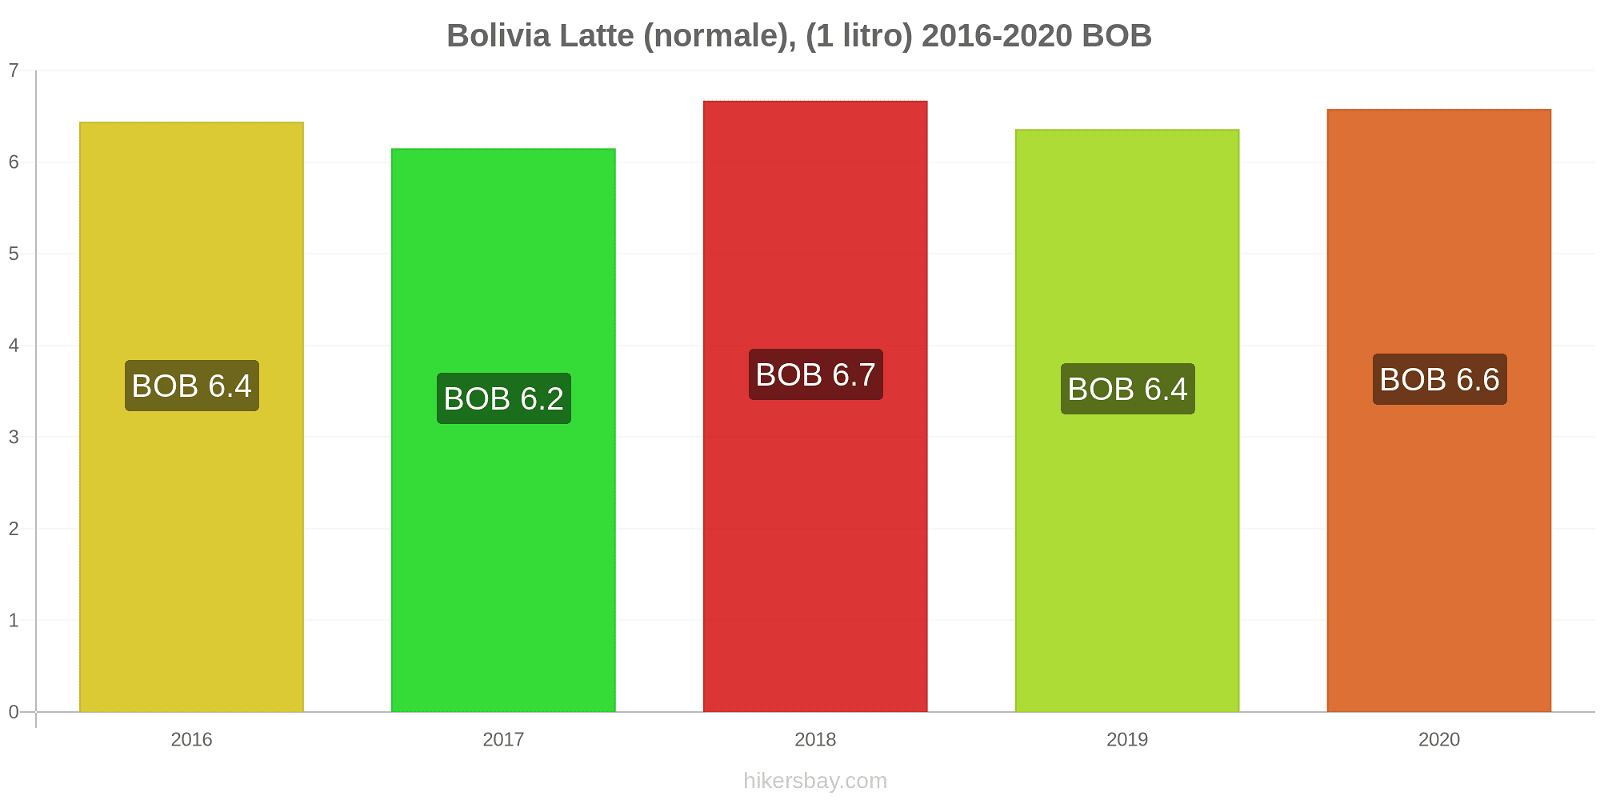 Bolivia variazioni di prezzo Latte (1 litro) hikersbay.com